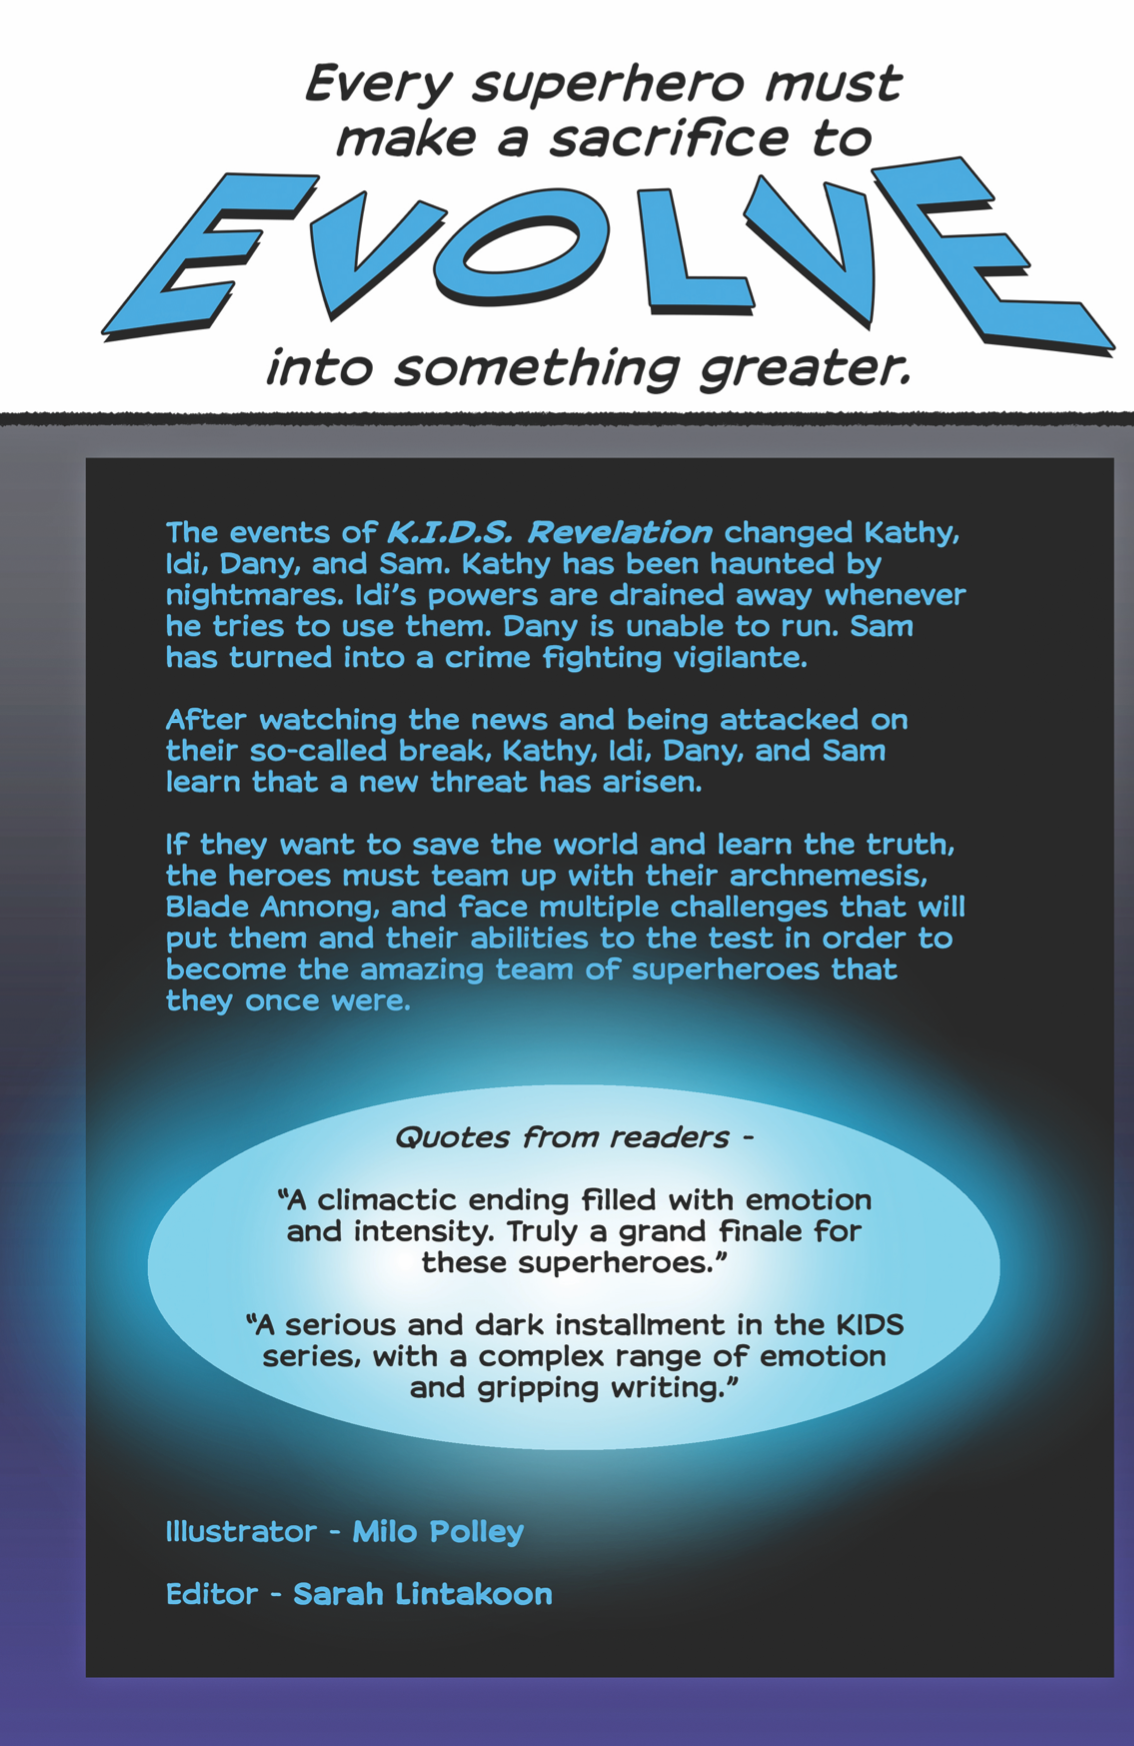 K.I.D.S Evolution - Book 3